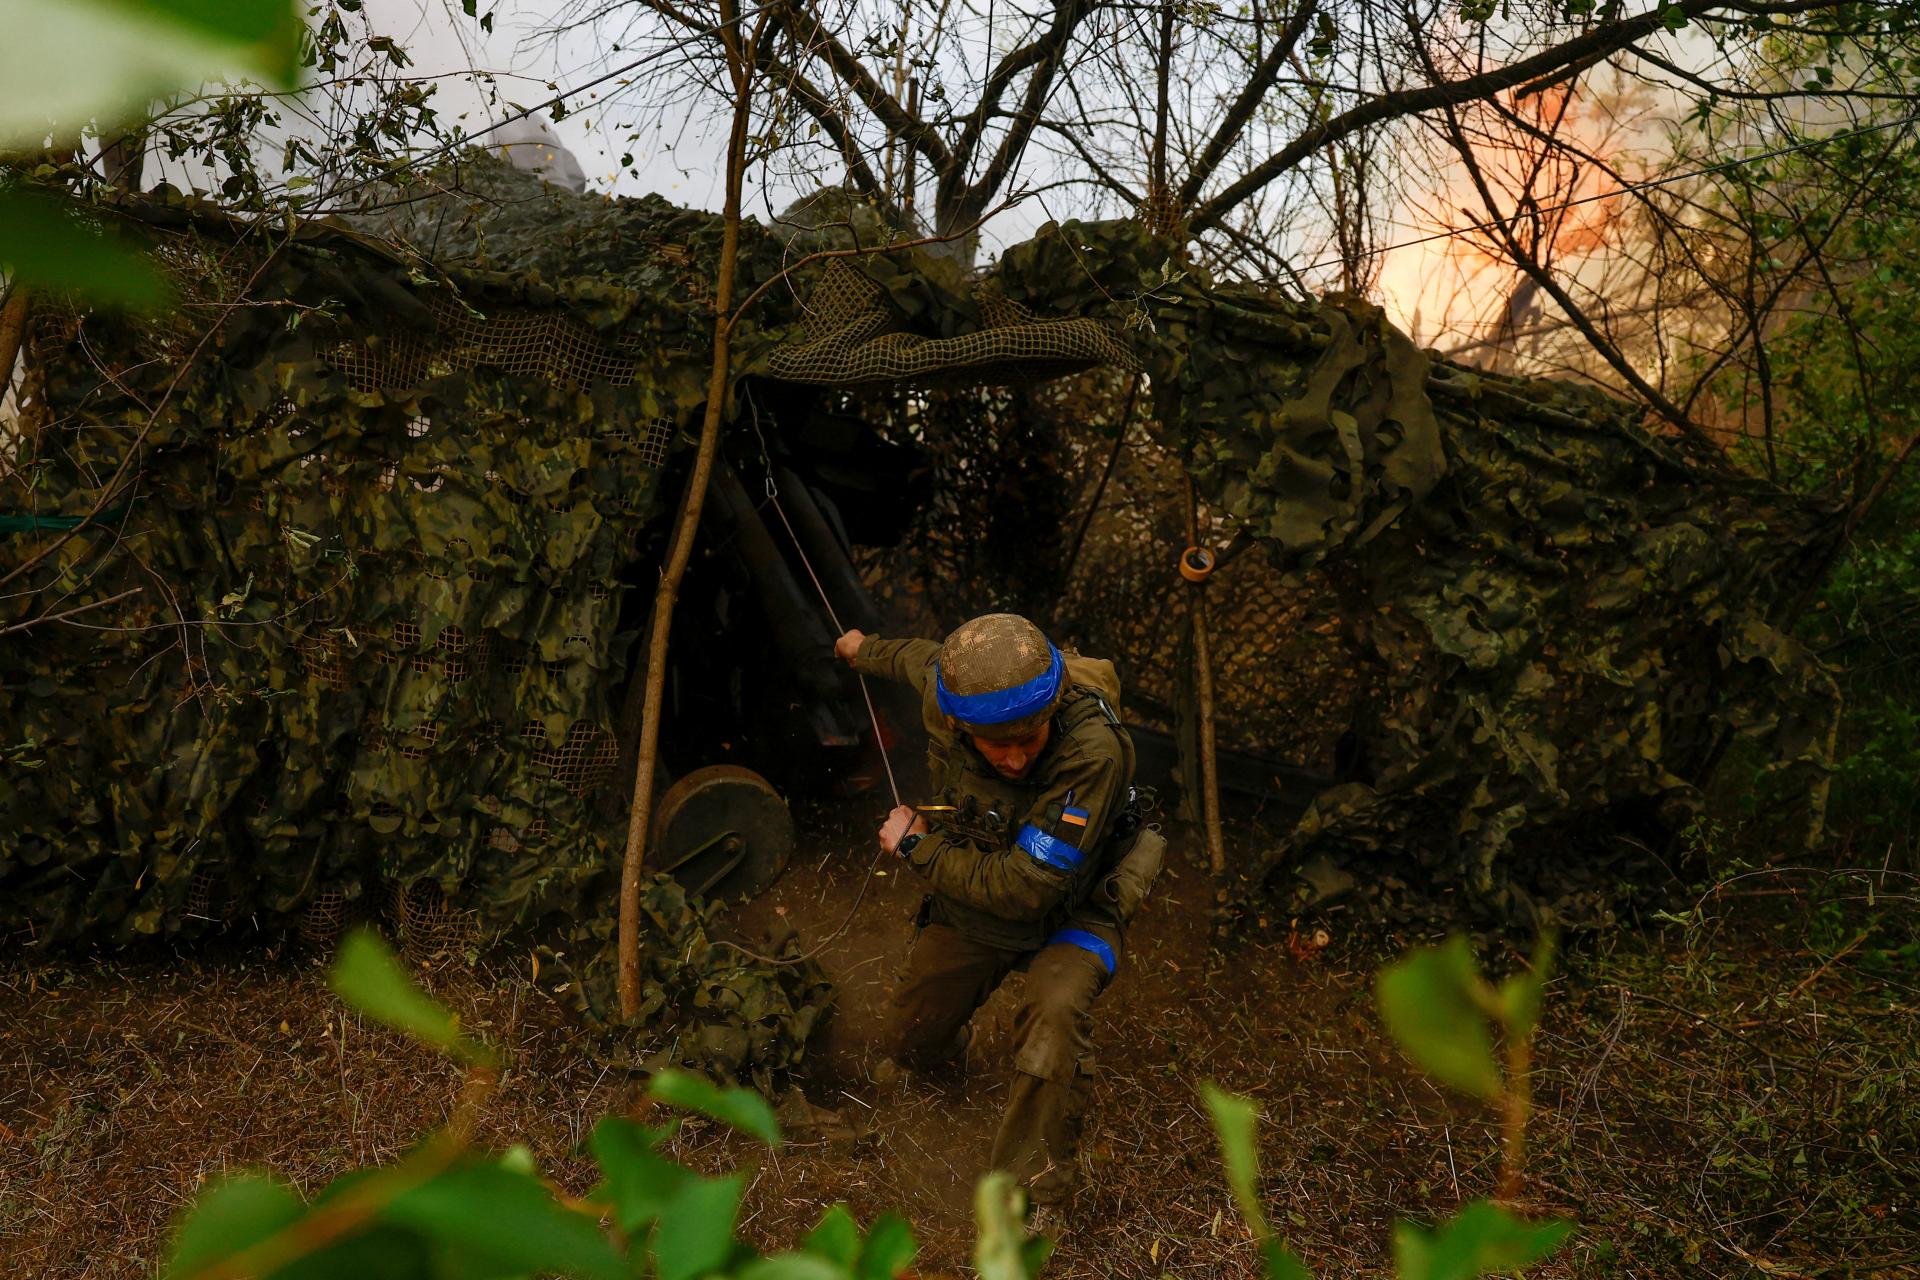 Ukrajinci prešli v Charkovskej oblasti do protiútoku. Rusi utrpeli veľmi vysoké straty, hlási Syrskyj